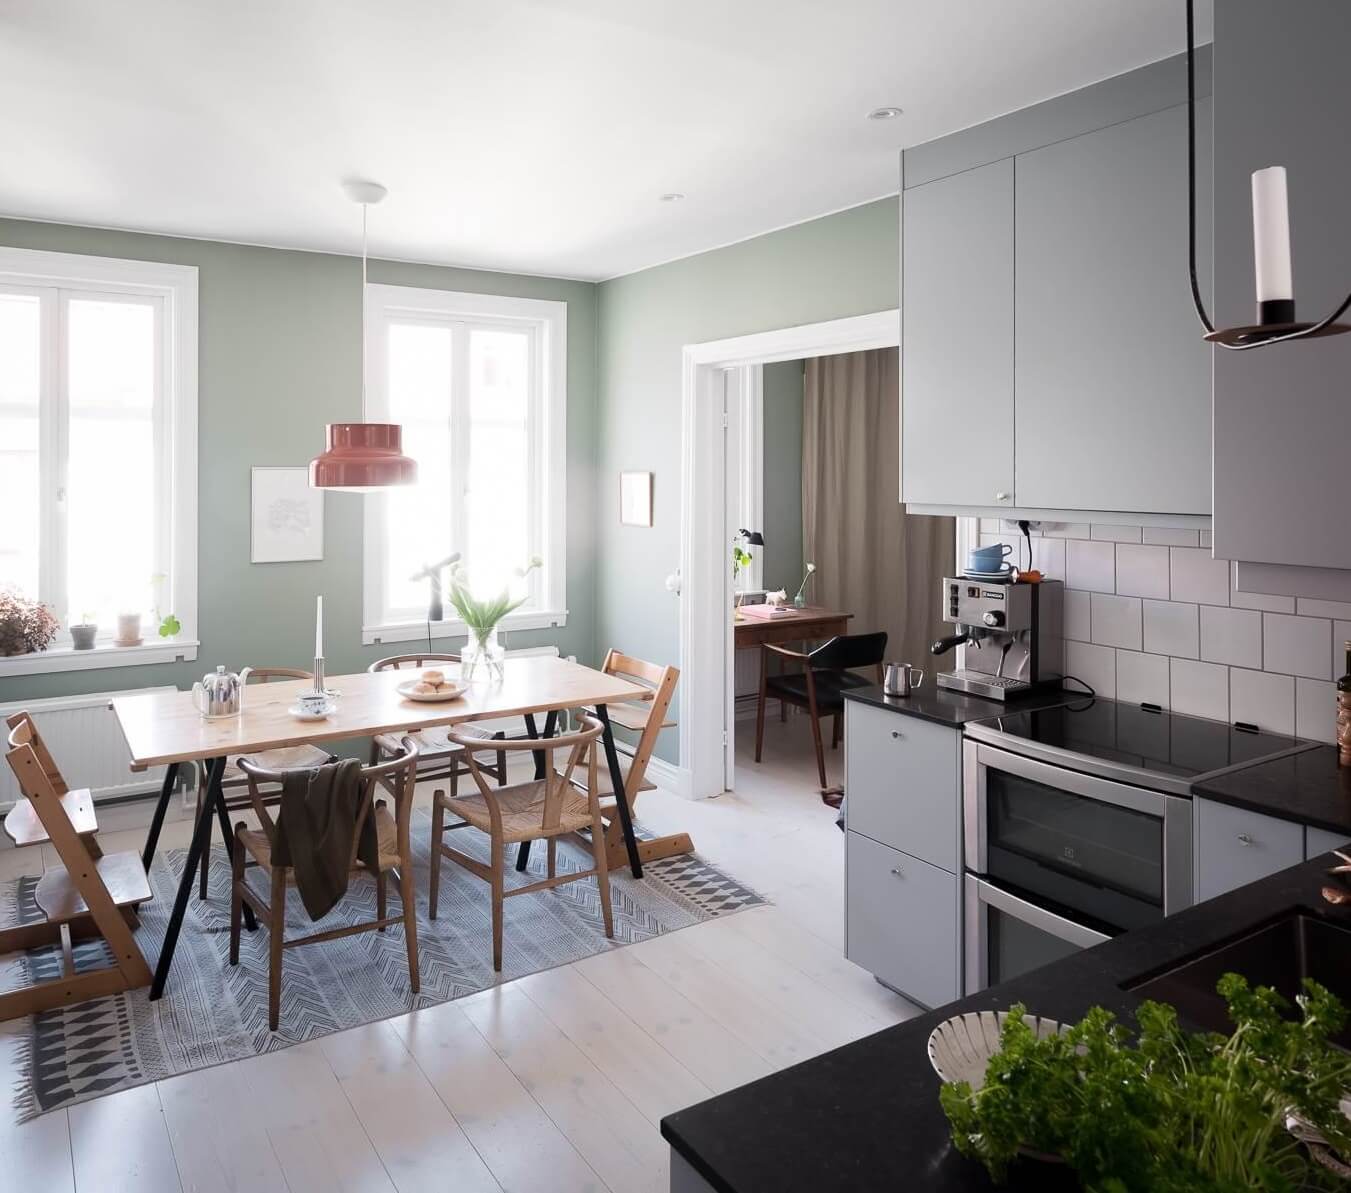 kitchen-dining-room-modern-design-nordroom